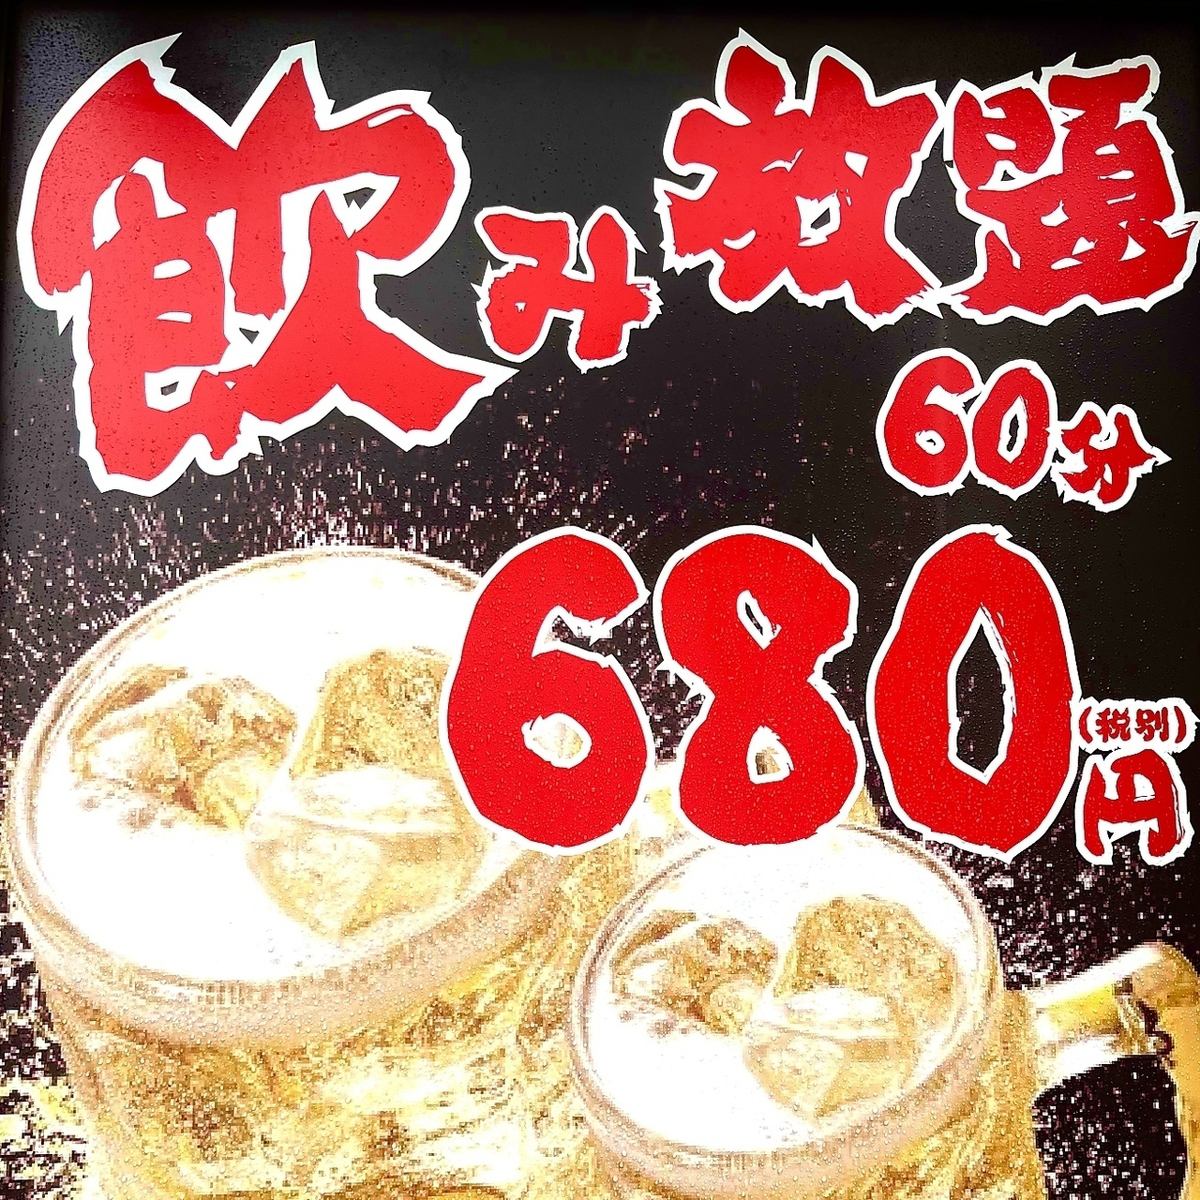 단품 음료 무제한 부가세 포함 748엔으로부터!! 뿔 하이도 마실 수 있는 충격의 저렴합니다